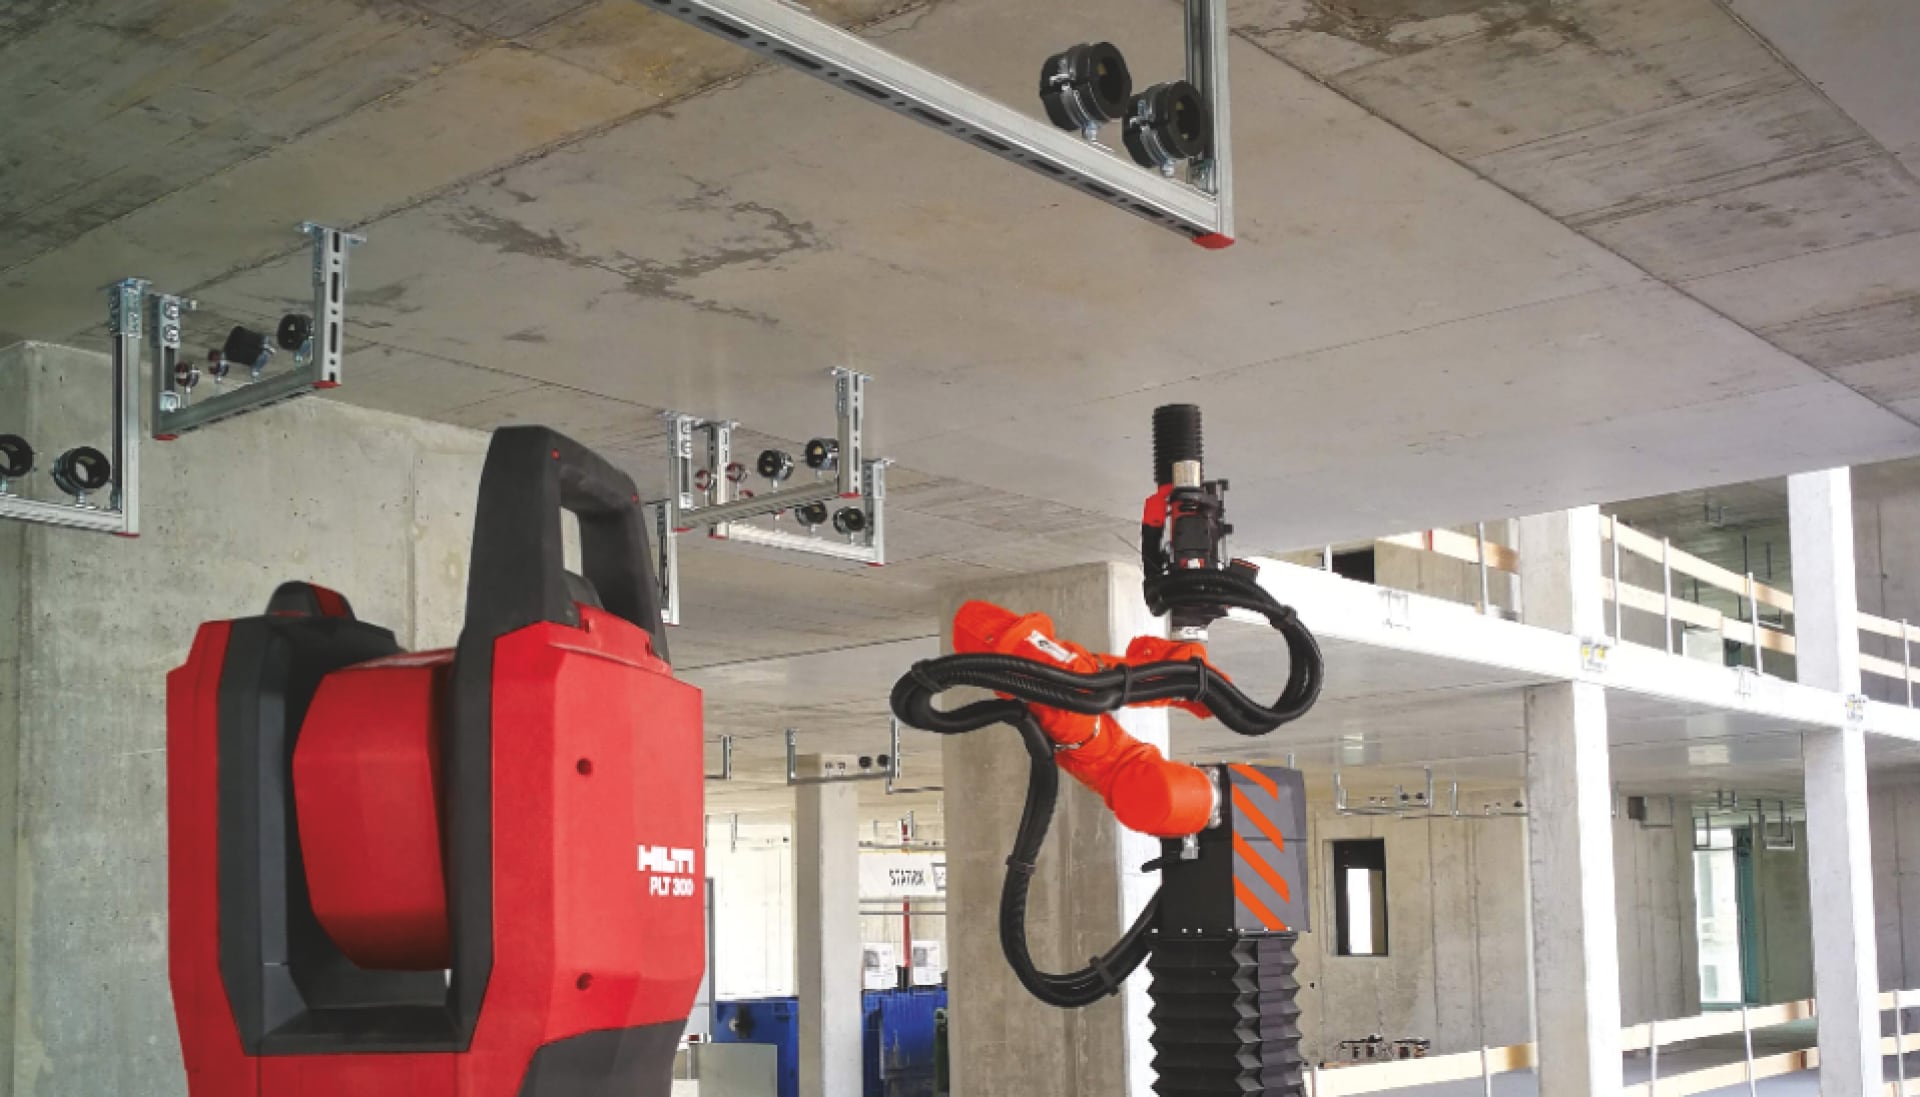 Hilti PLT 300 utsättningsverktyg och Jaibot borrobot utför installationslösningar på en byggarbetsplats.